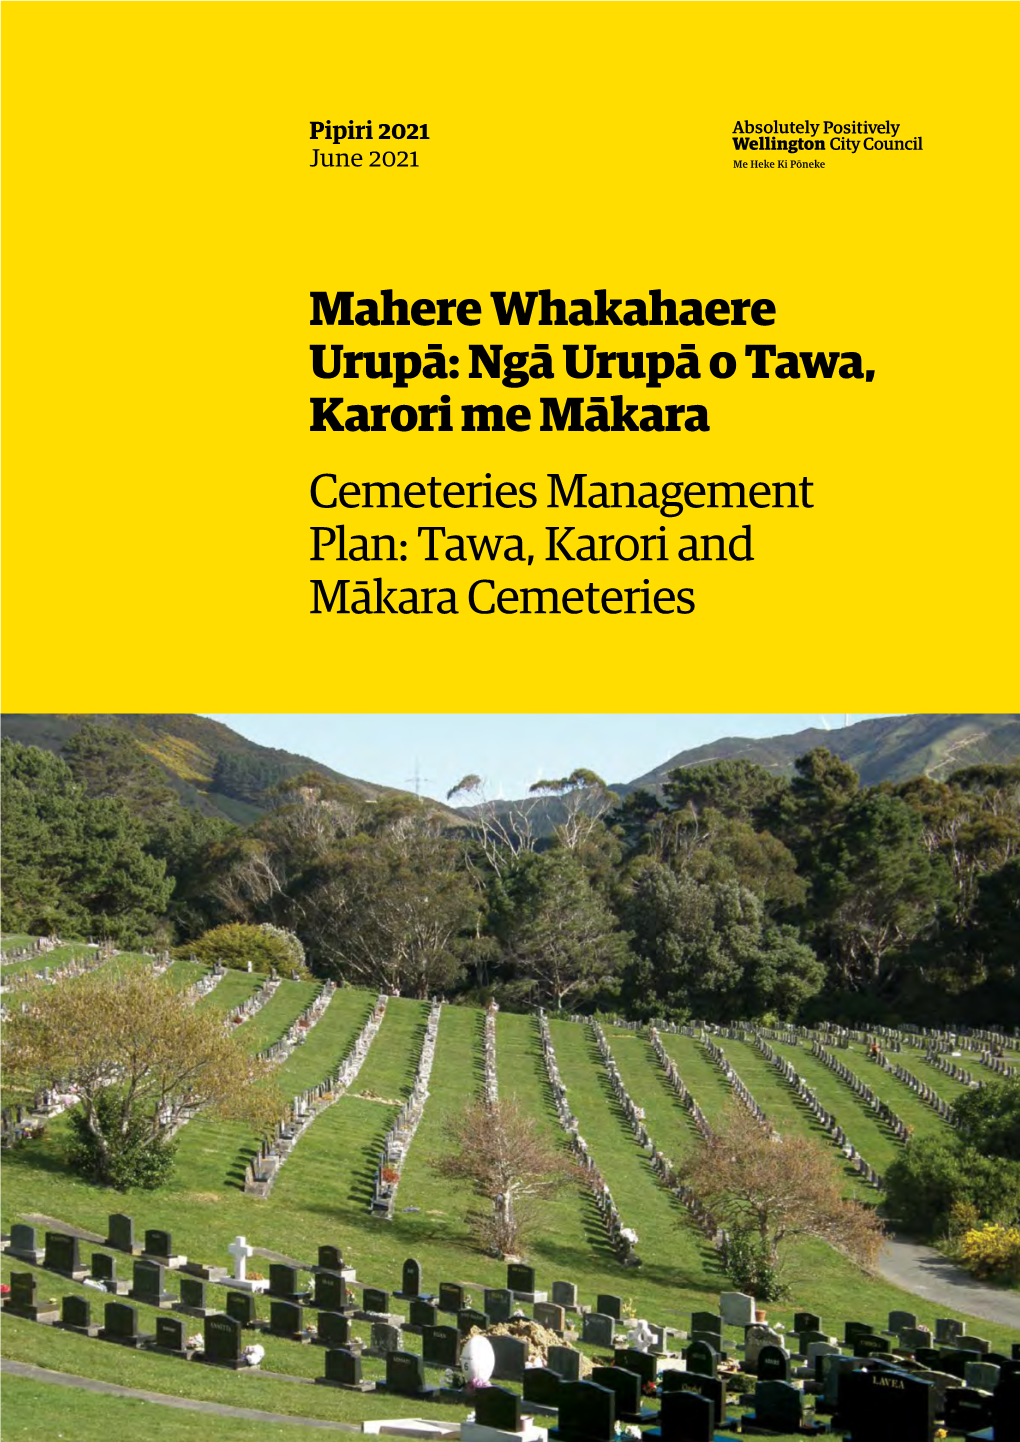 Cemeteries Management Plan: Tawa, Karori and Mākara Cemeteries Mahere Whakahaere Urupā Cemeteries Management Plan